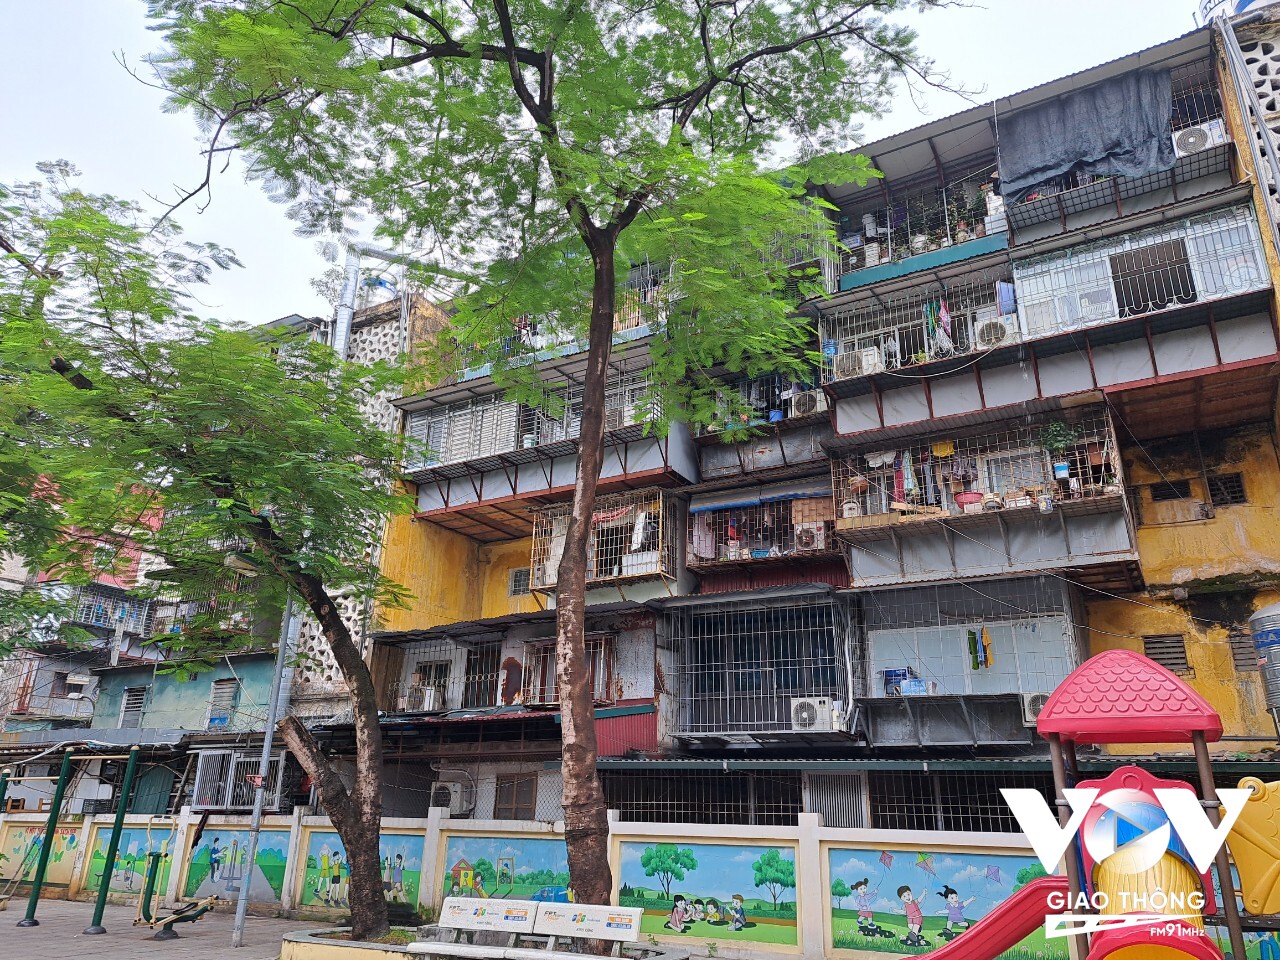 Ngay như tại khu tập thể Nghĩa Tân, Hà Nội, nơi vừa có quyết định lập quy hoạch chi tiết cải tạo, xây dựng lại cũng đang gặp nhiều khó khăn để triển khai dự án.